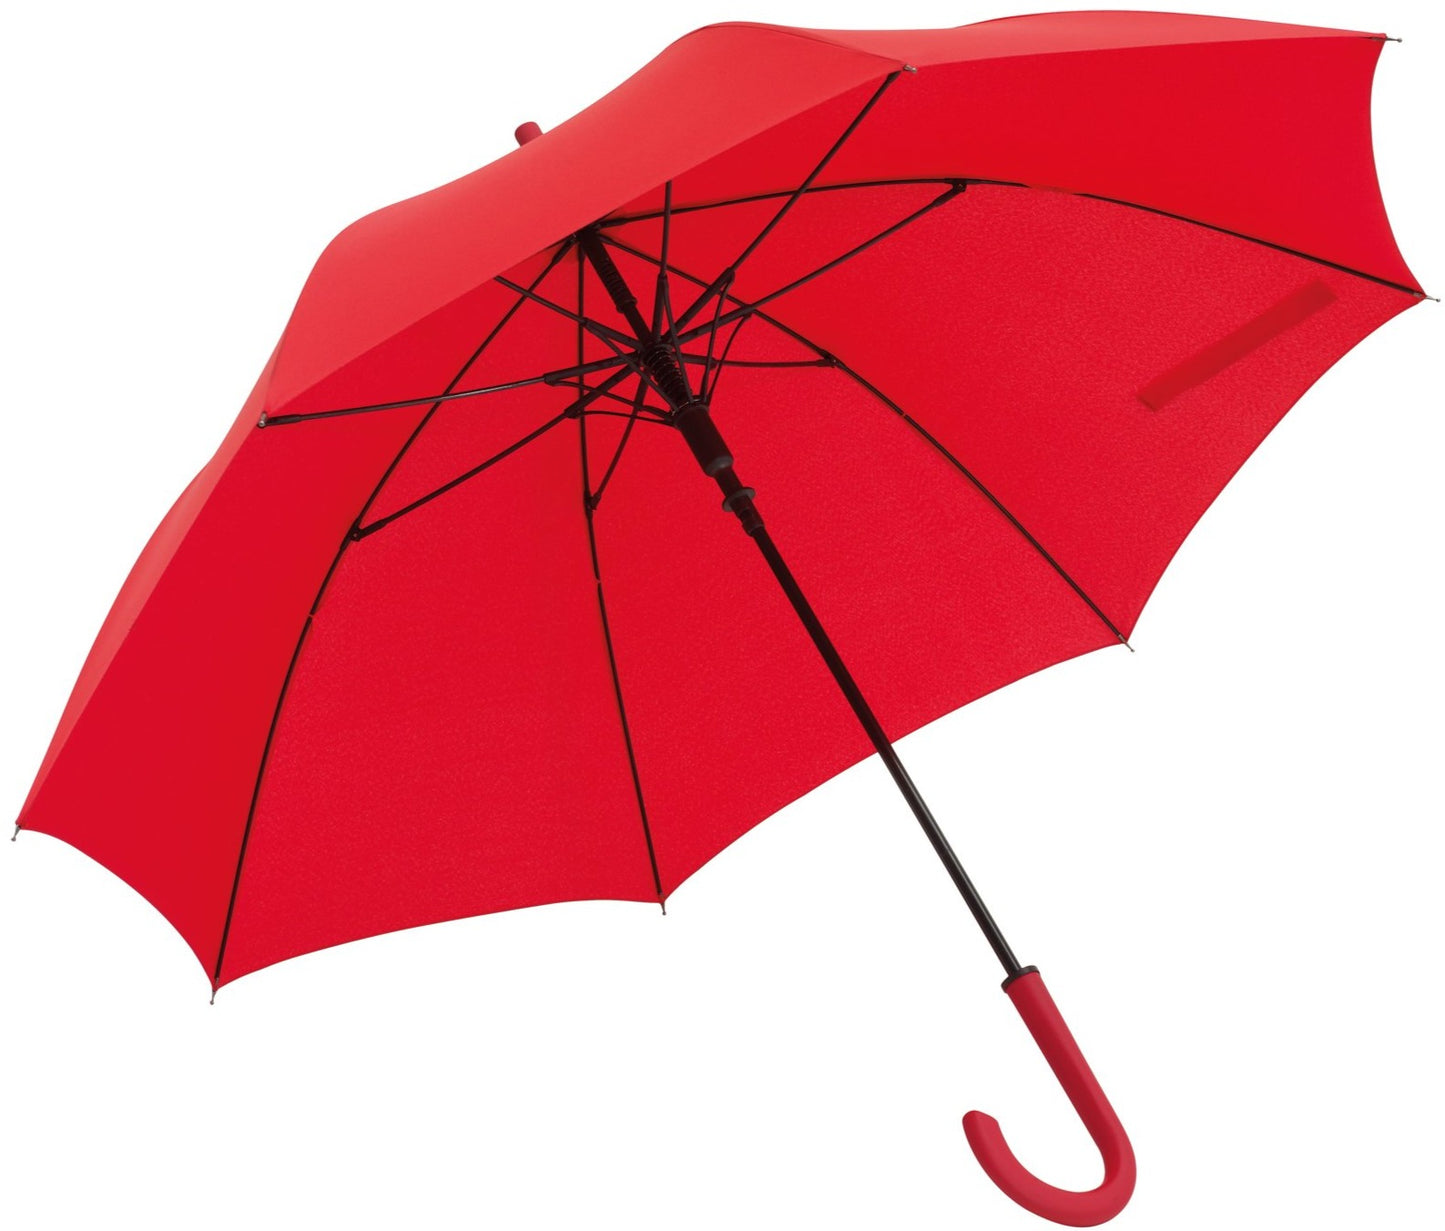 Κόκκινη ομπρέλα βροχής, αυτόματη, μακριά με ανθρακόνημα.